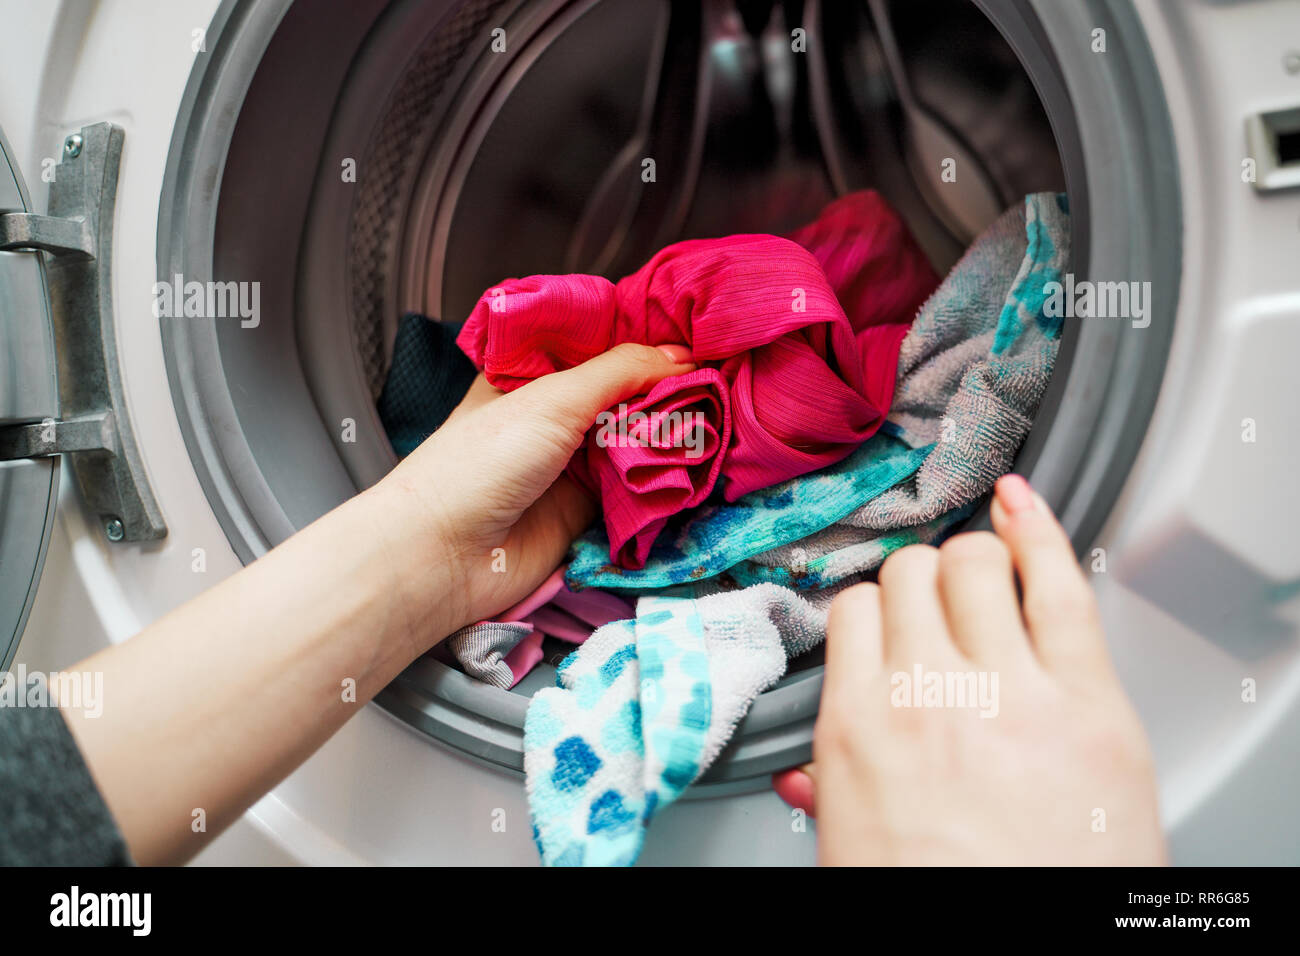 Image des femmes mains mettre les vêtements sales dans la machine à laver Banque D'Images